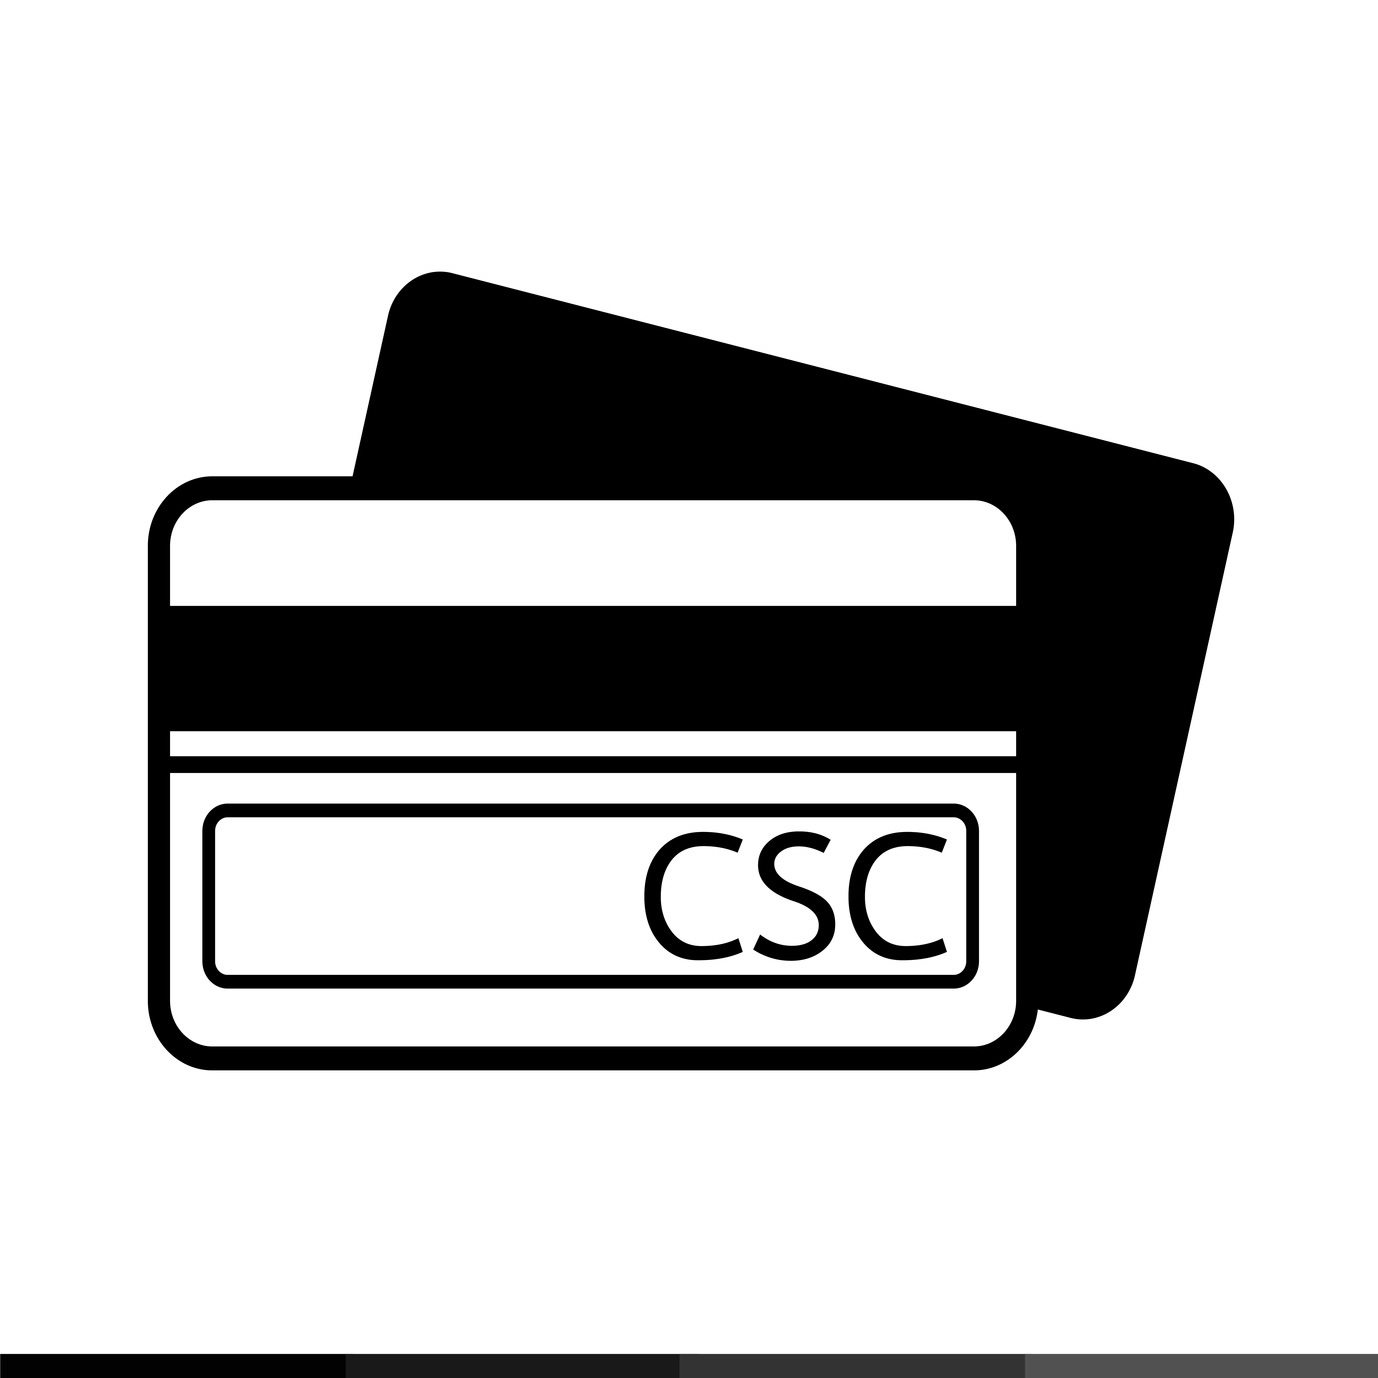 Thẻ CSC - Định nghĩa, Khái niệm và Nó là gì